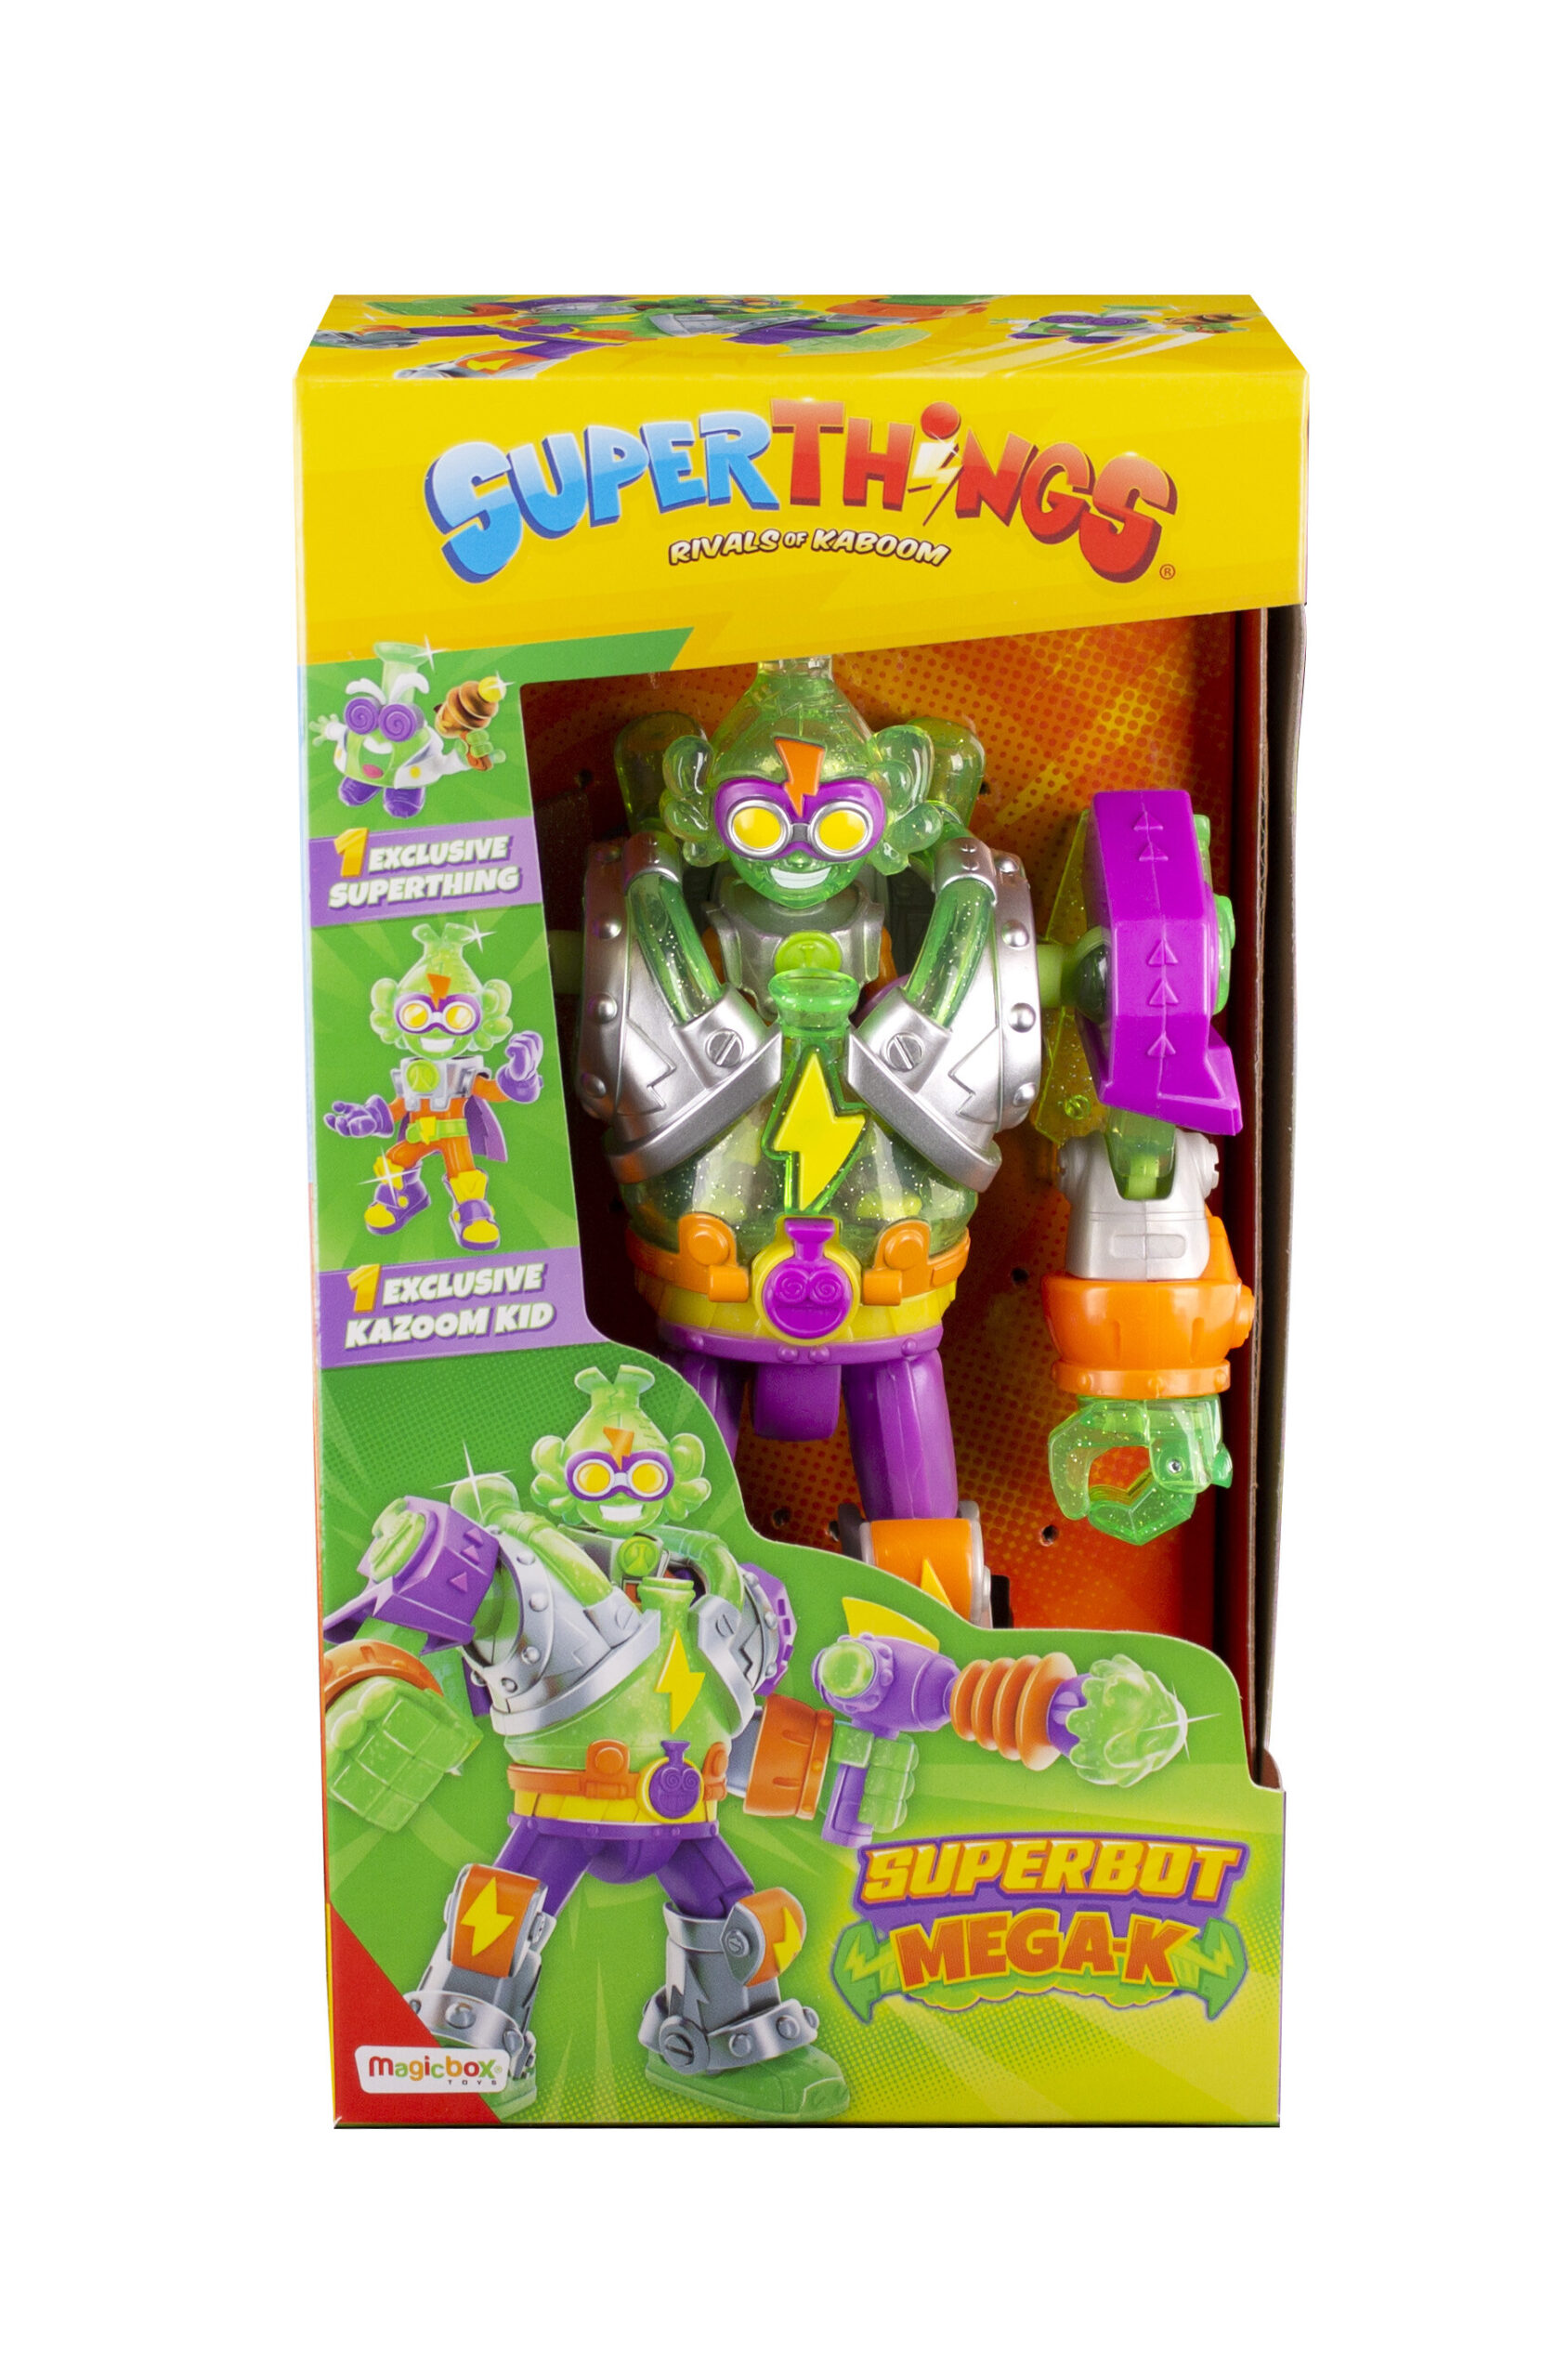 Superthings superbot mega-k con 1 kazoom kid e 1 superthing - SUPERTHINGS